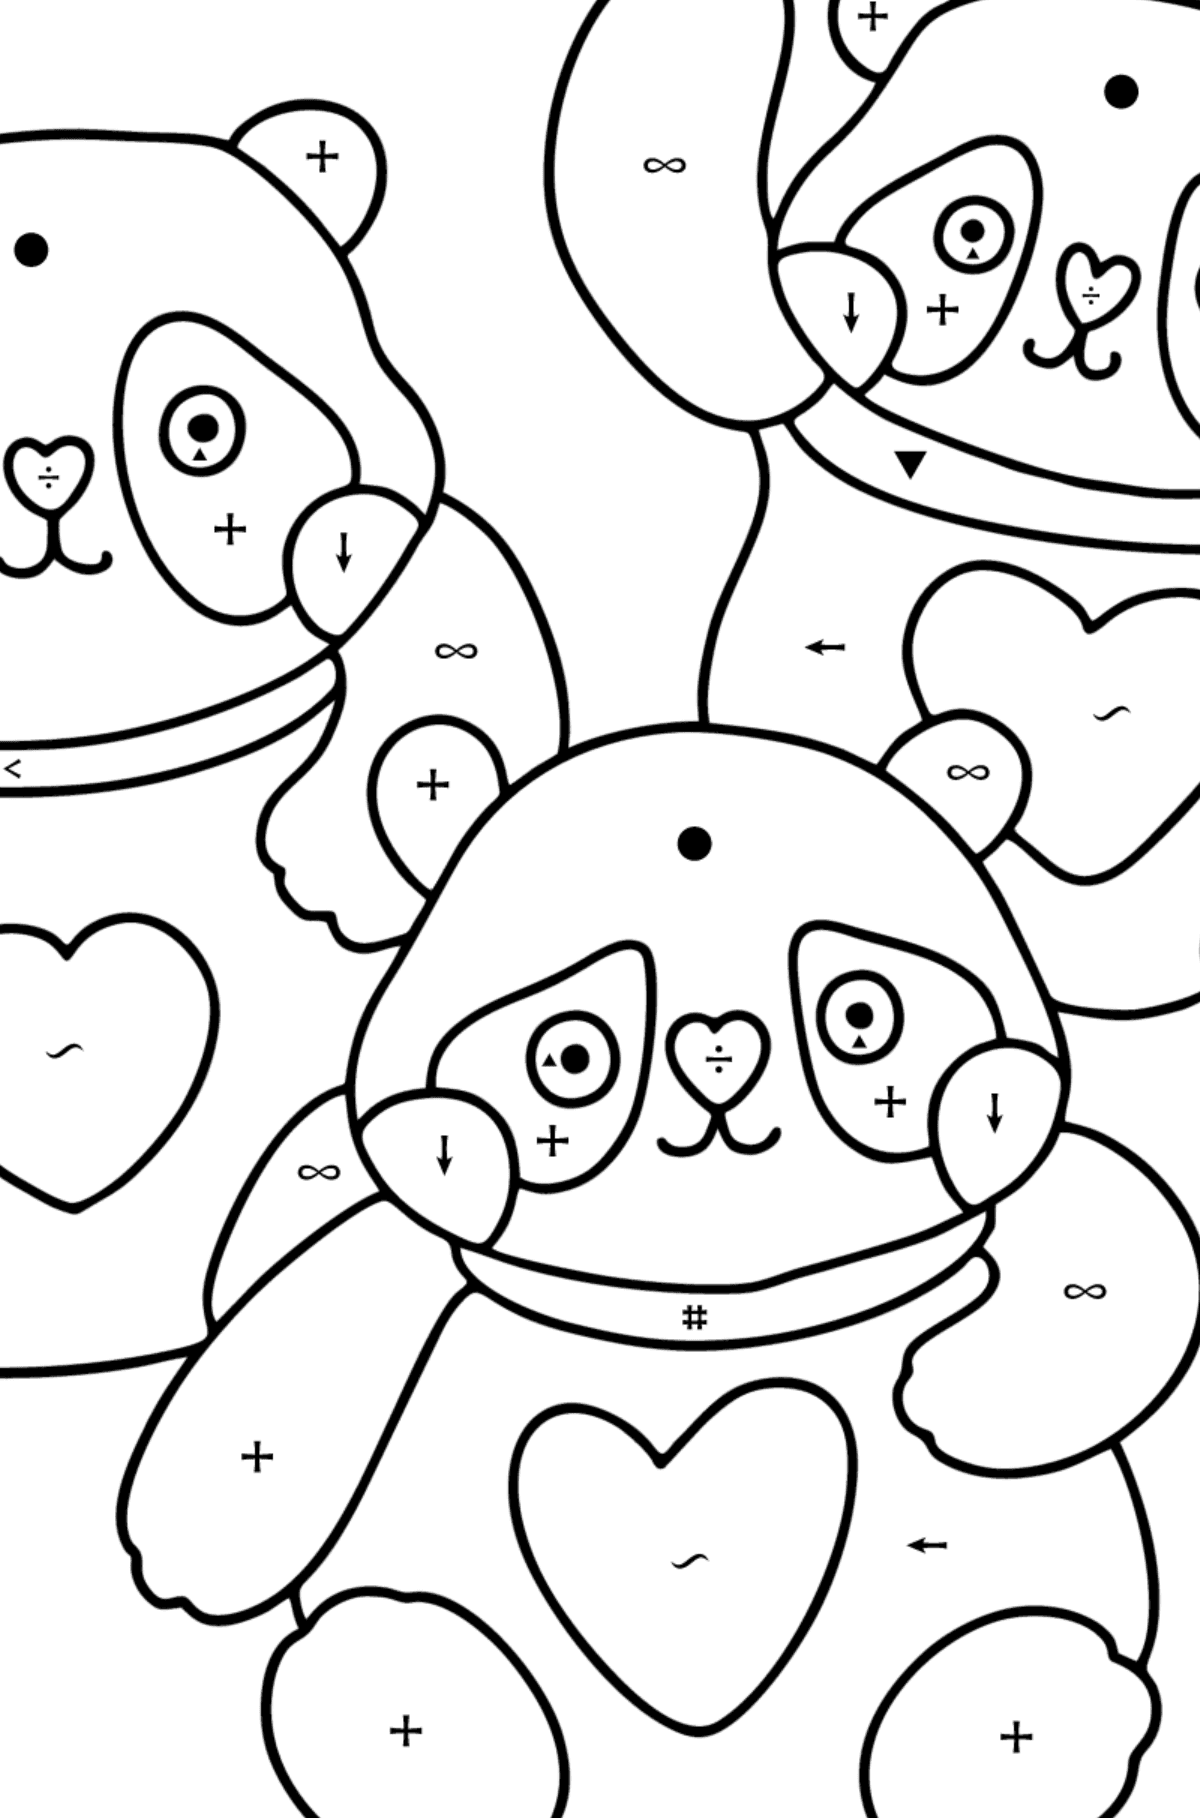 Disegno di panda kawaii da colorare - Colorare per simboli per bambini